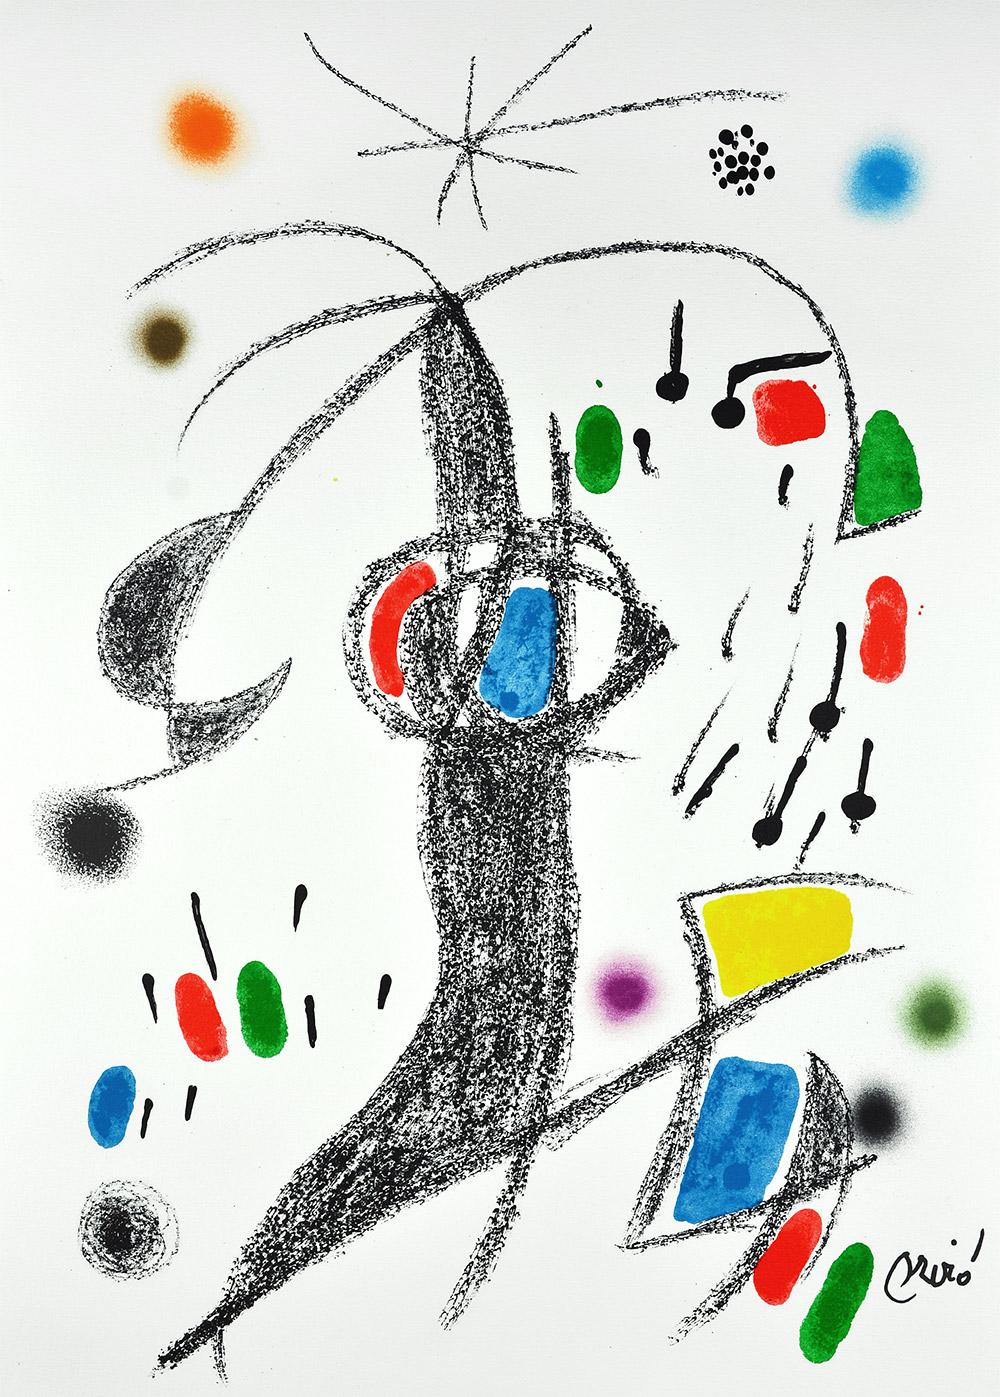 Joan Miró - Maravillas con variaciones acrósticas en el jardín de Miró XIX
Datum der Gründung: 1975
Medium: Lithographie auf Gvarro-Papier
Auflage: 1500
Größe: 49,5 x 35,5 cm
Beobachtungen: Lithographie auf Gvarro-Papierplatte signiert.